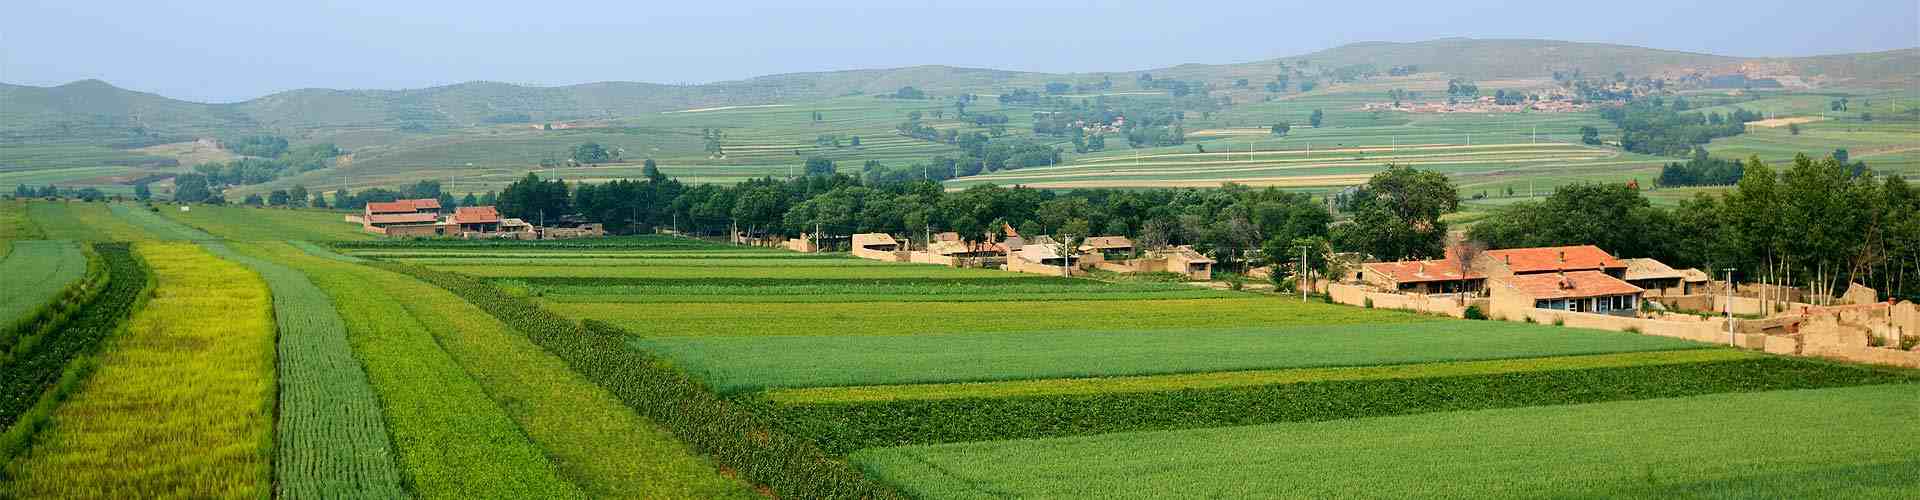 Casas rurales con granja de animales en Galicia
          
          

